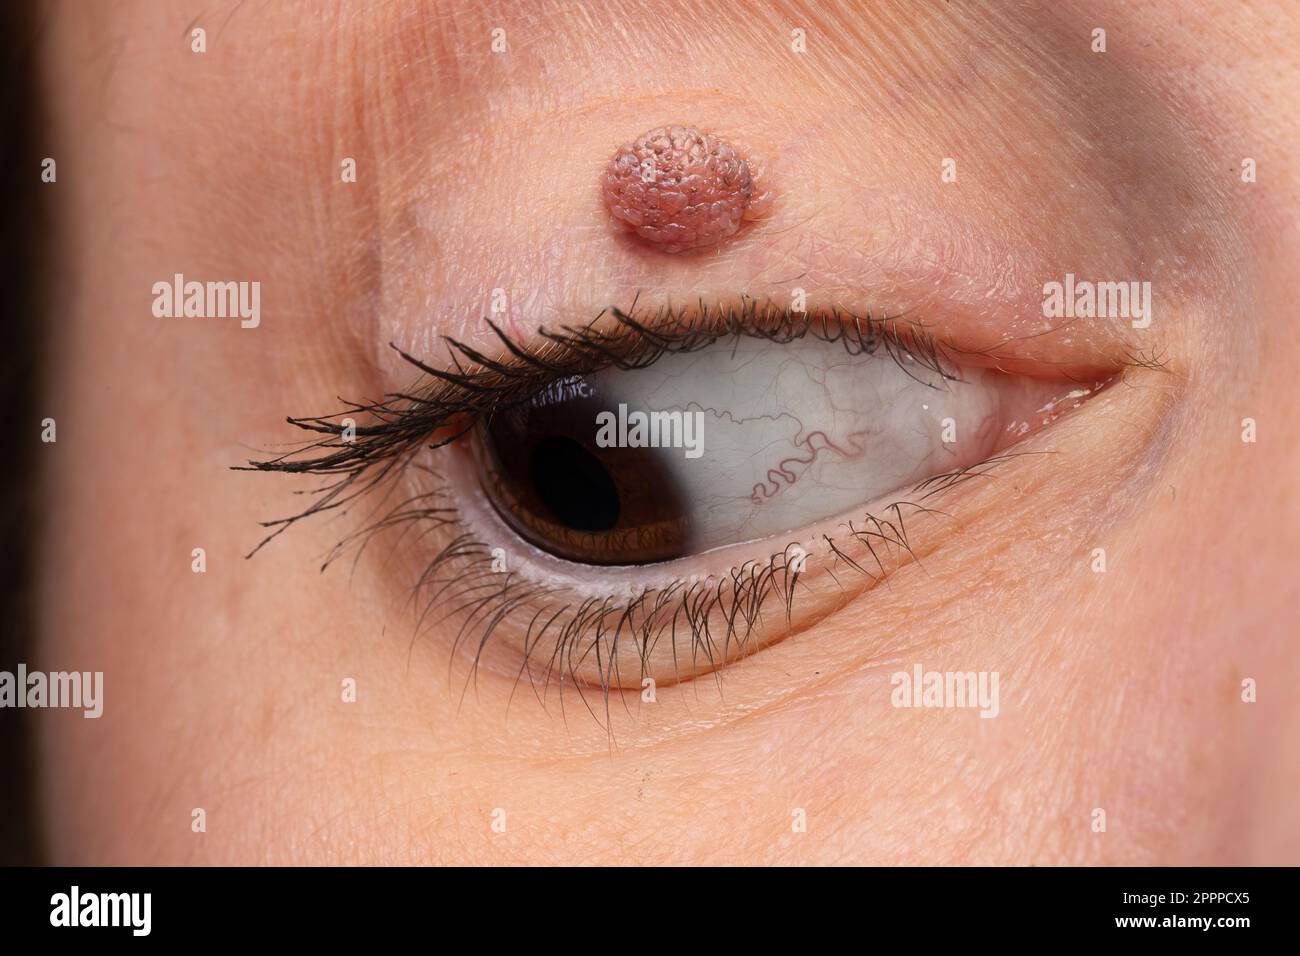 Un oeil de femme avec un nevus mélanocytique de paupière. Kyste de kératine sur la paupière, une masse semblable à un pailloome. Banque D'Images